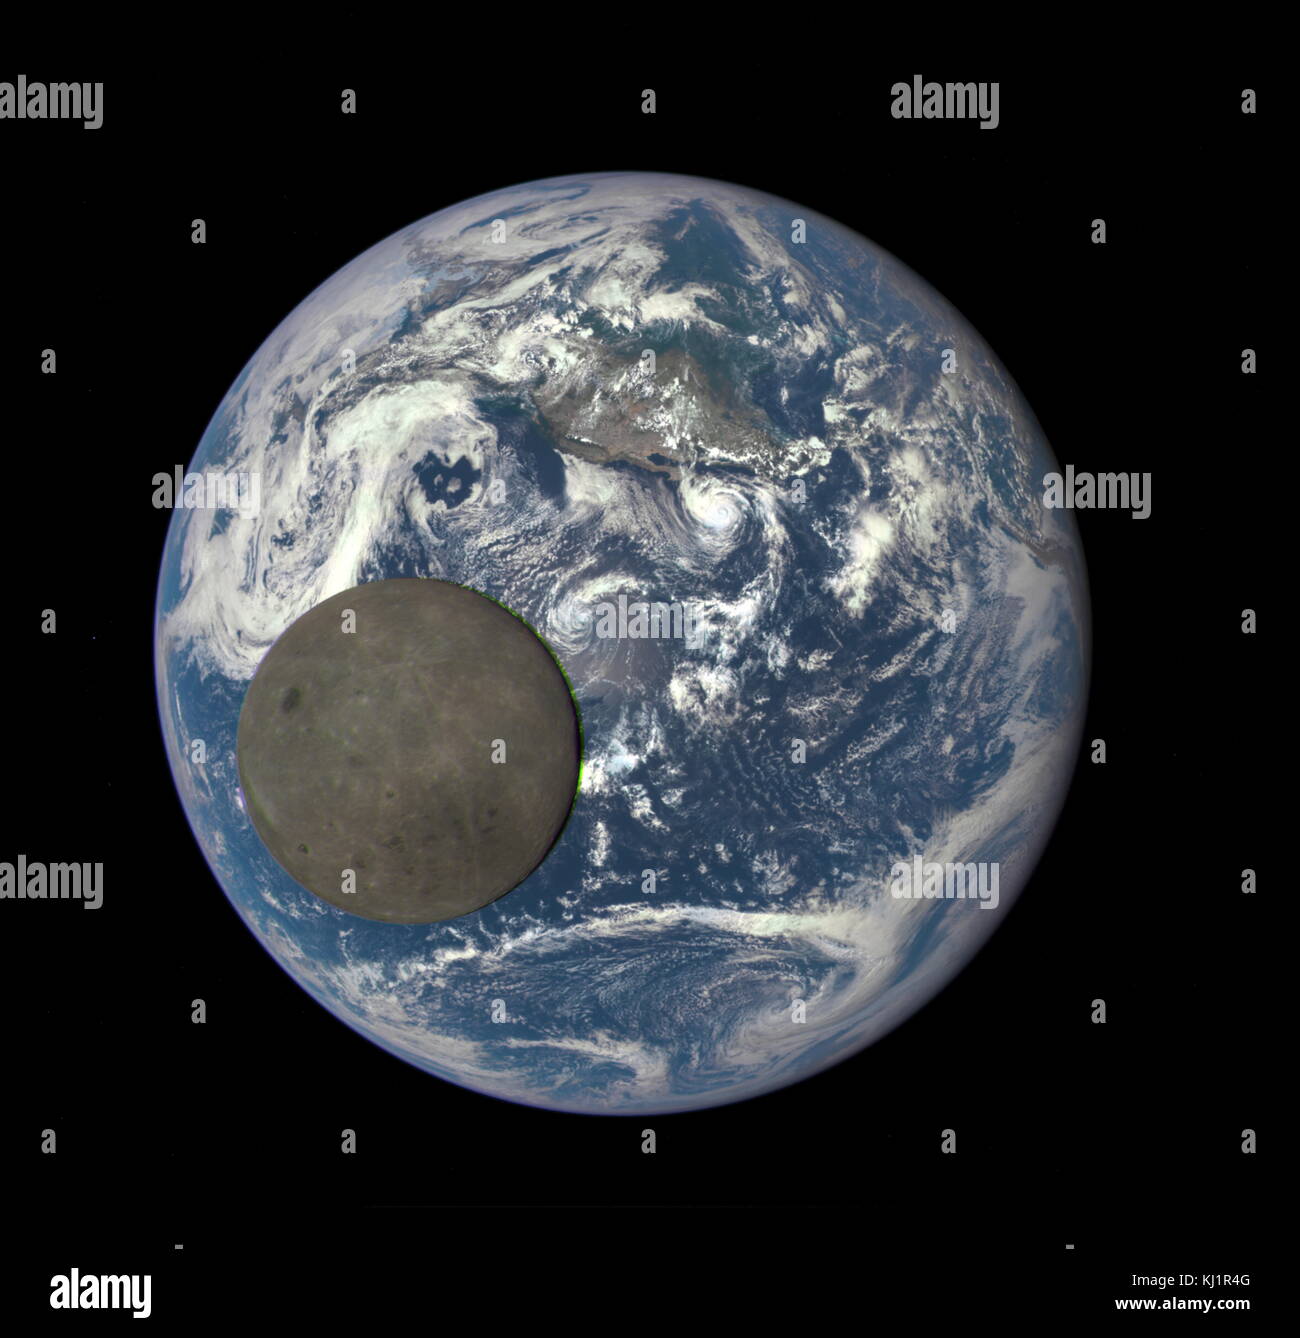 2016 Das Bild zeigt die Rückseite des Mondes von der Sonne beleuchtet, wie es zwischen der DSCOVR Raumschiff Erde polychromatischen Imaging Kamera (EPIC) Kamera und Teleskop, und die Erde - eine Million Meilen entfernt Kreuze Stockfoto